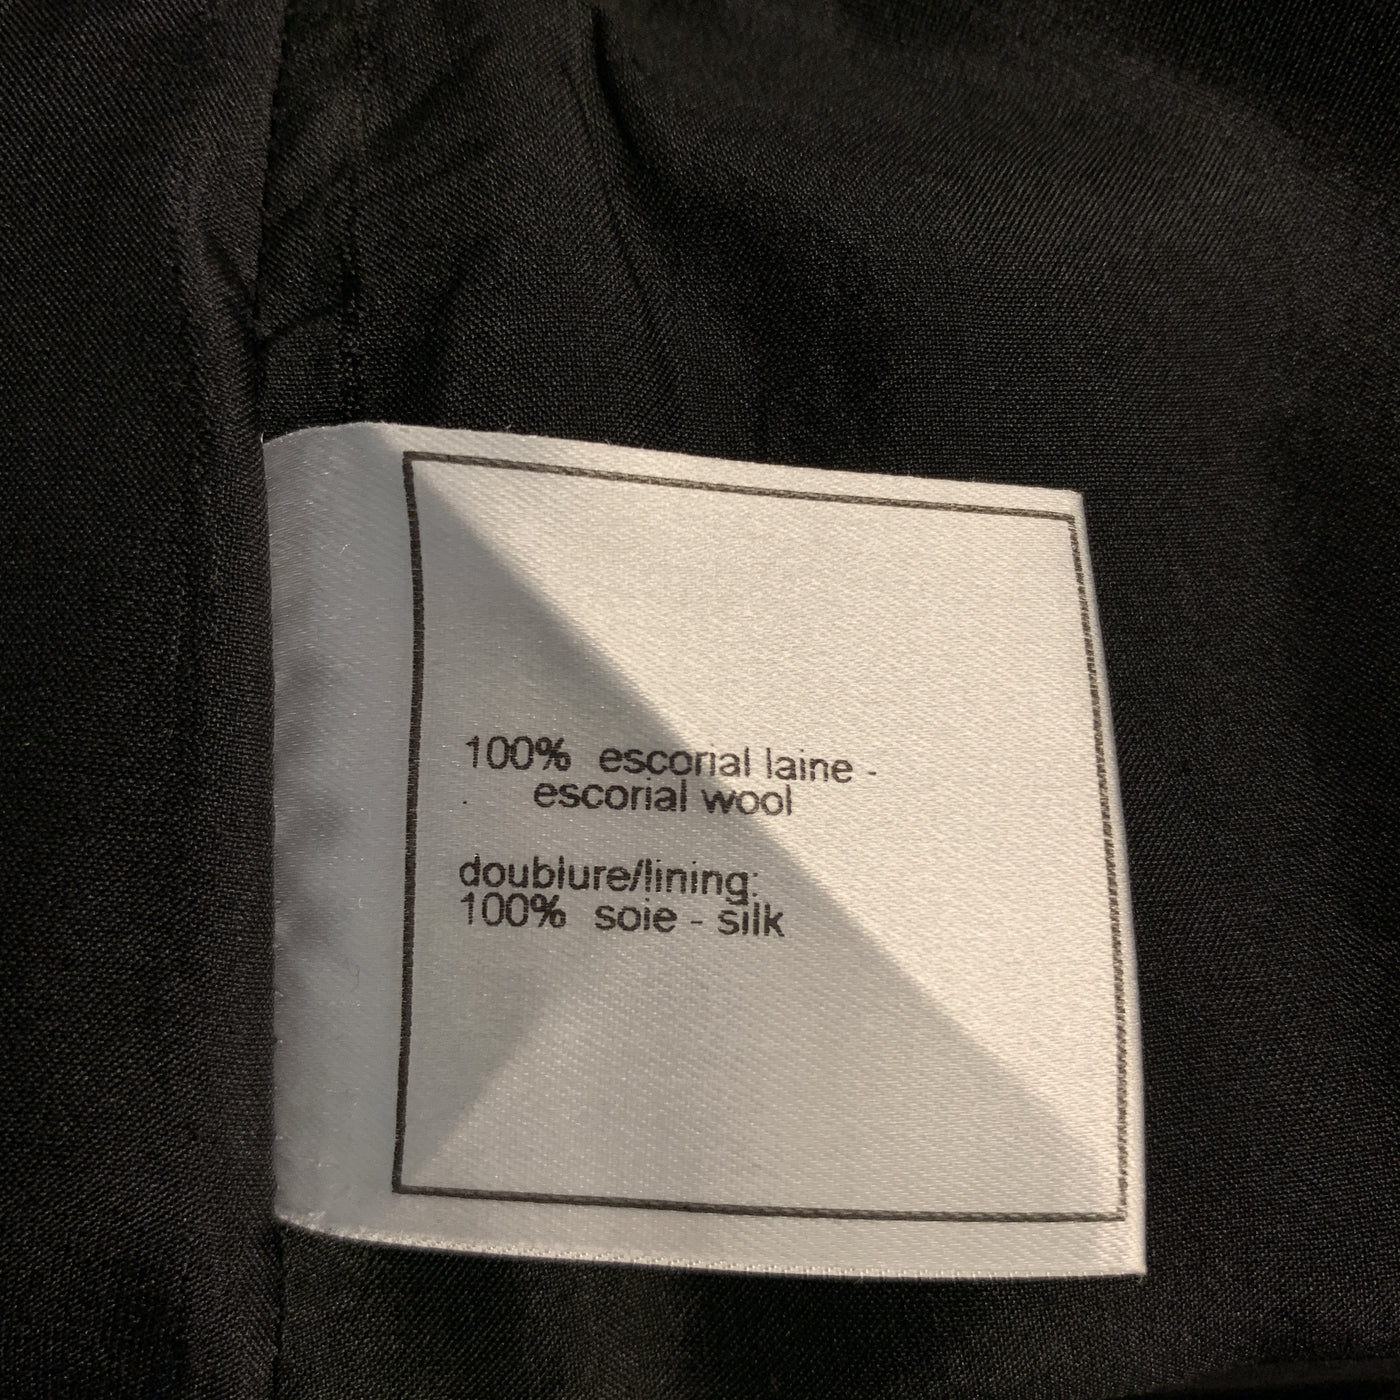 CHANEL Size 2 Black Wool Zip Fly Zip Pocket Silver Logo Dress Pants